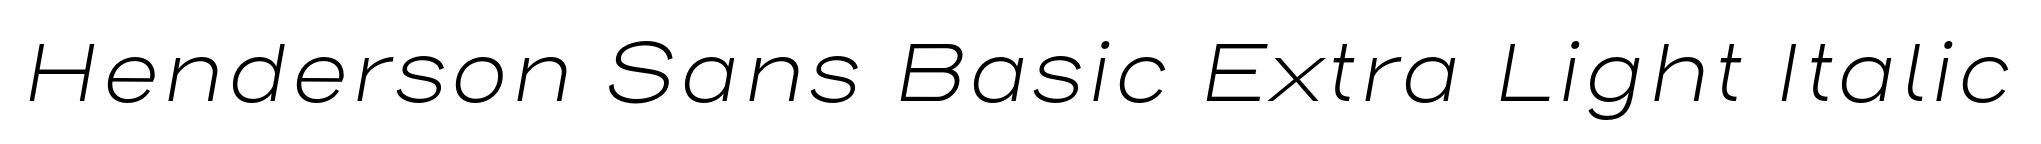 Henderson Sans Basic Extra Light Italic image